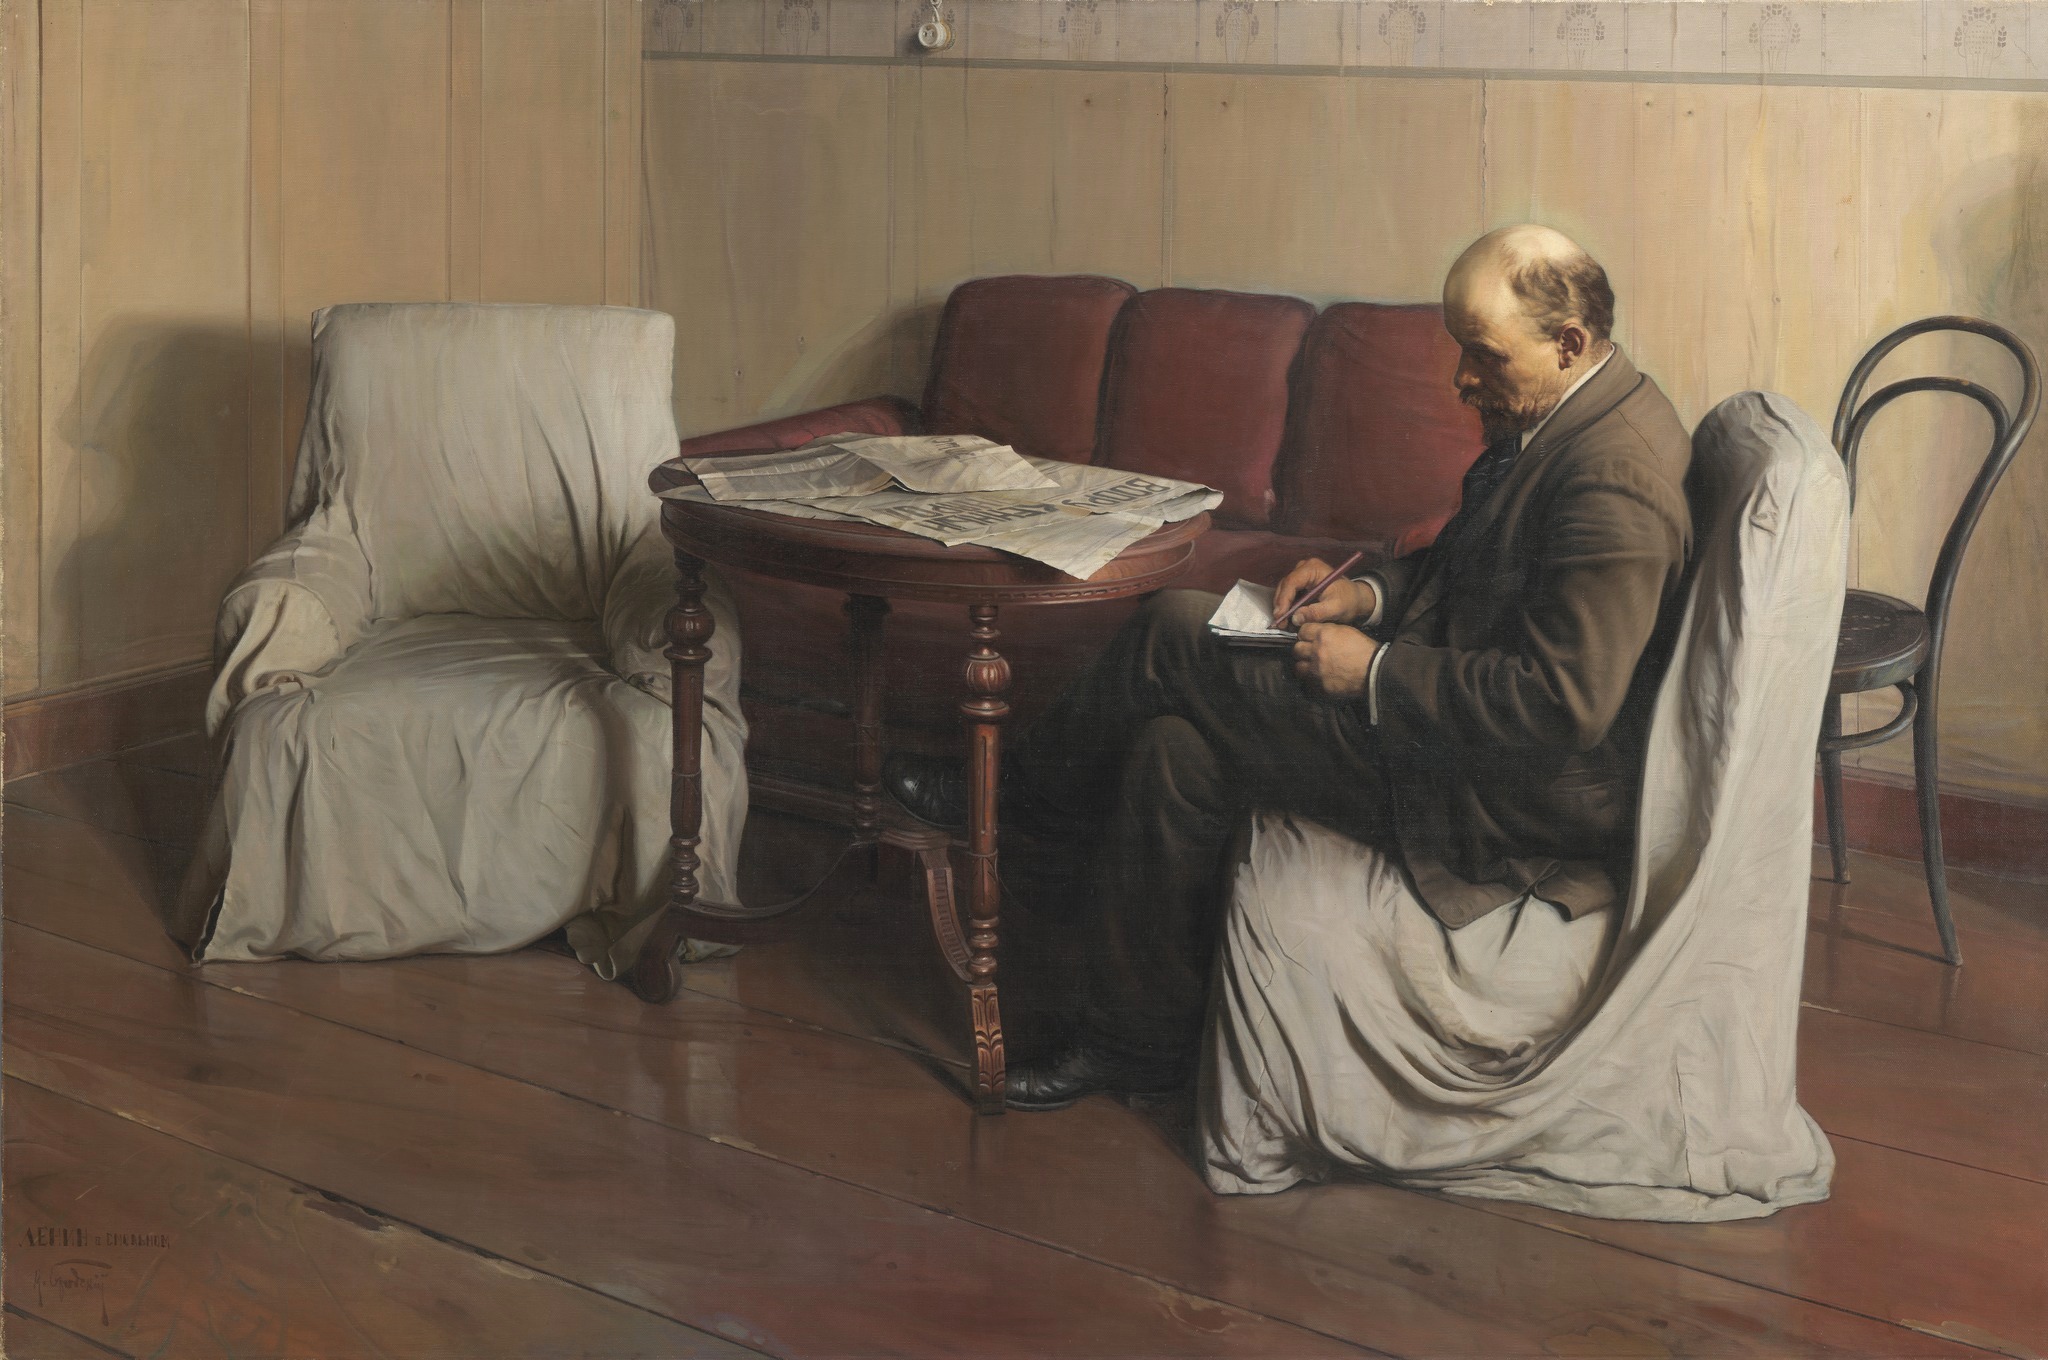 Isaak Brodsky, Vladimir Lénine à Smolny en 1917, 1930, huile sur toile, 190 x 287 cm, Galerie Tretyakov, Moscou